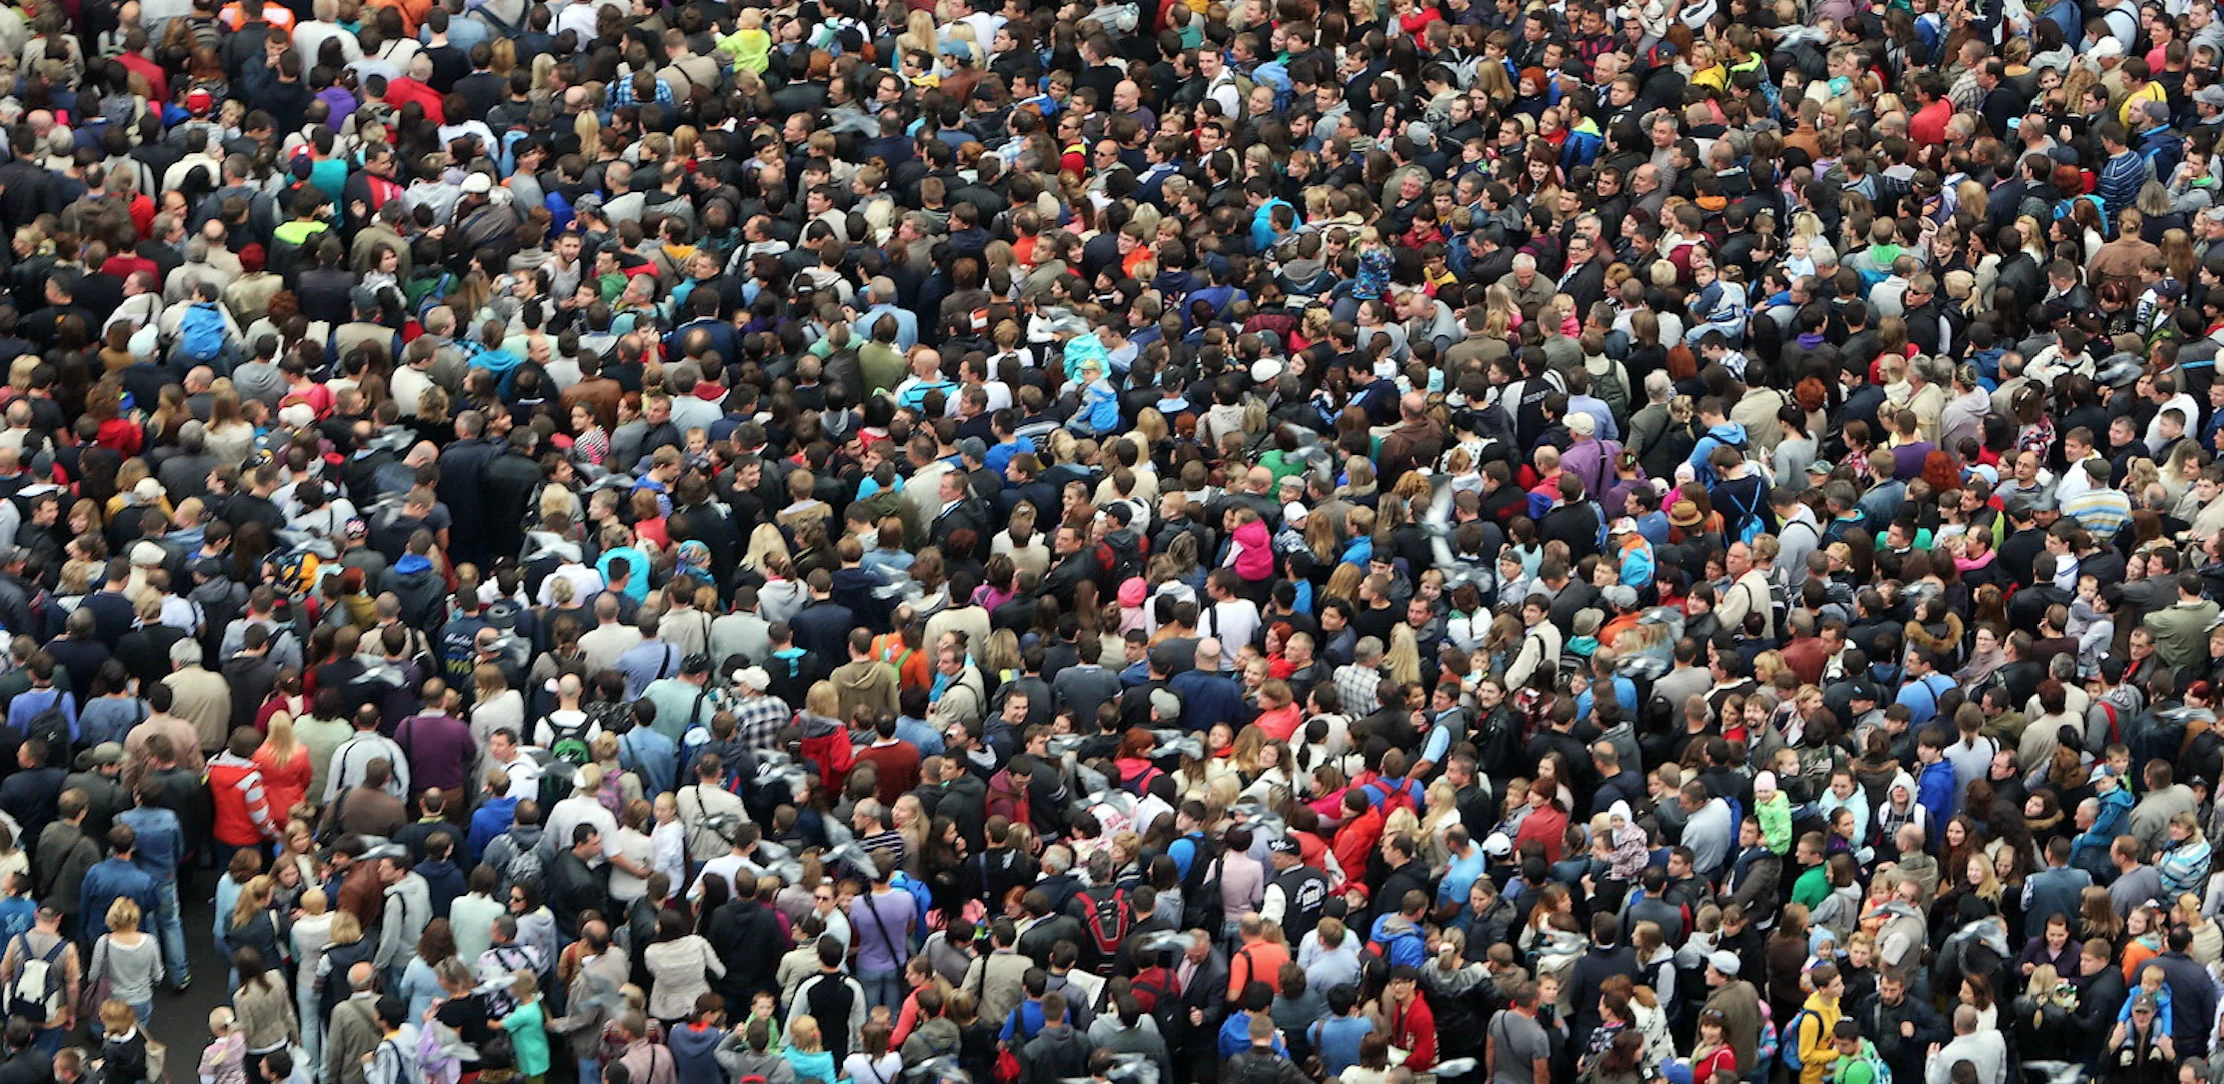 18 много людей. Большая толпа людей. Большое скопление людей. Массовое скопление людей. Много народу.